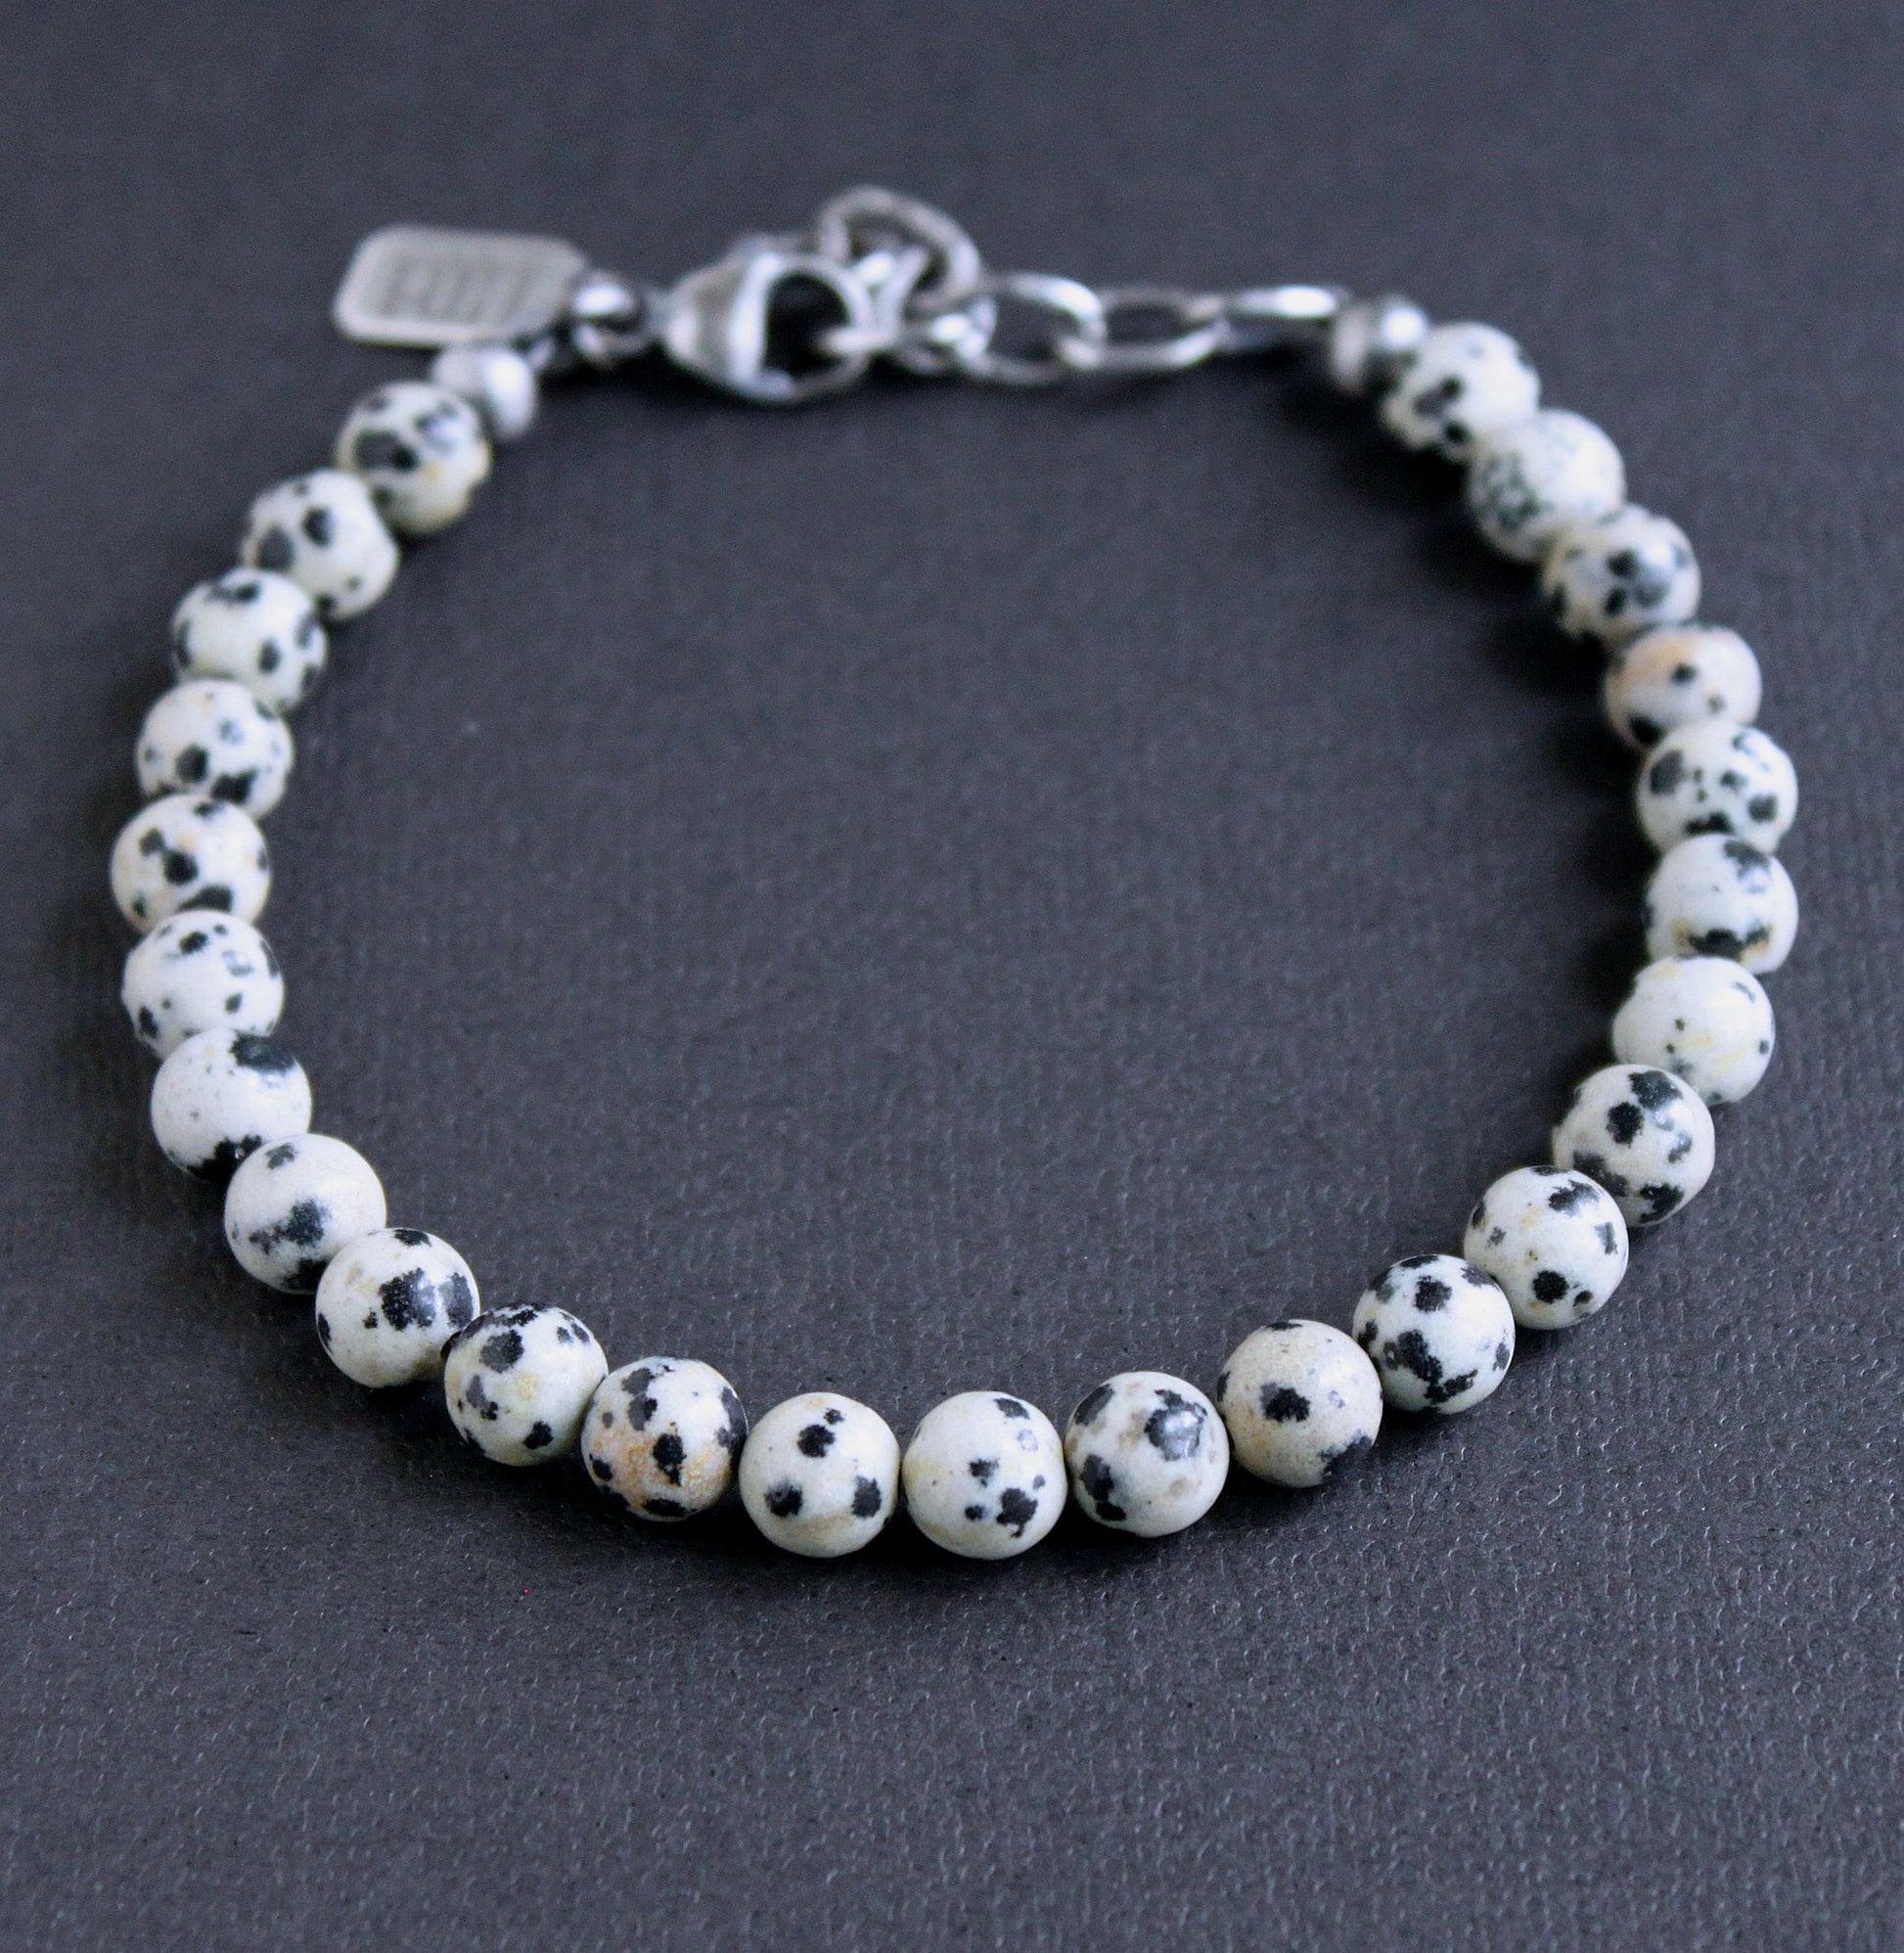 Men's black white bead bracelet, adjustable